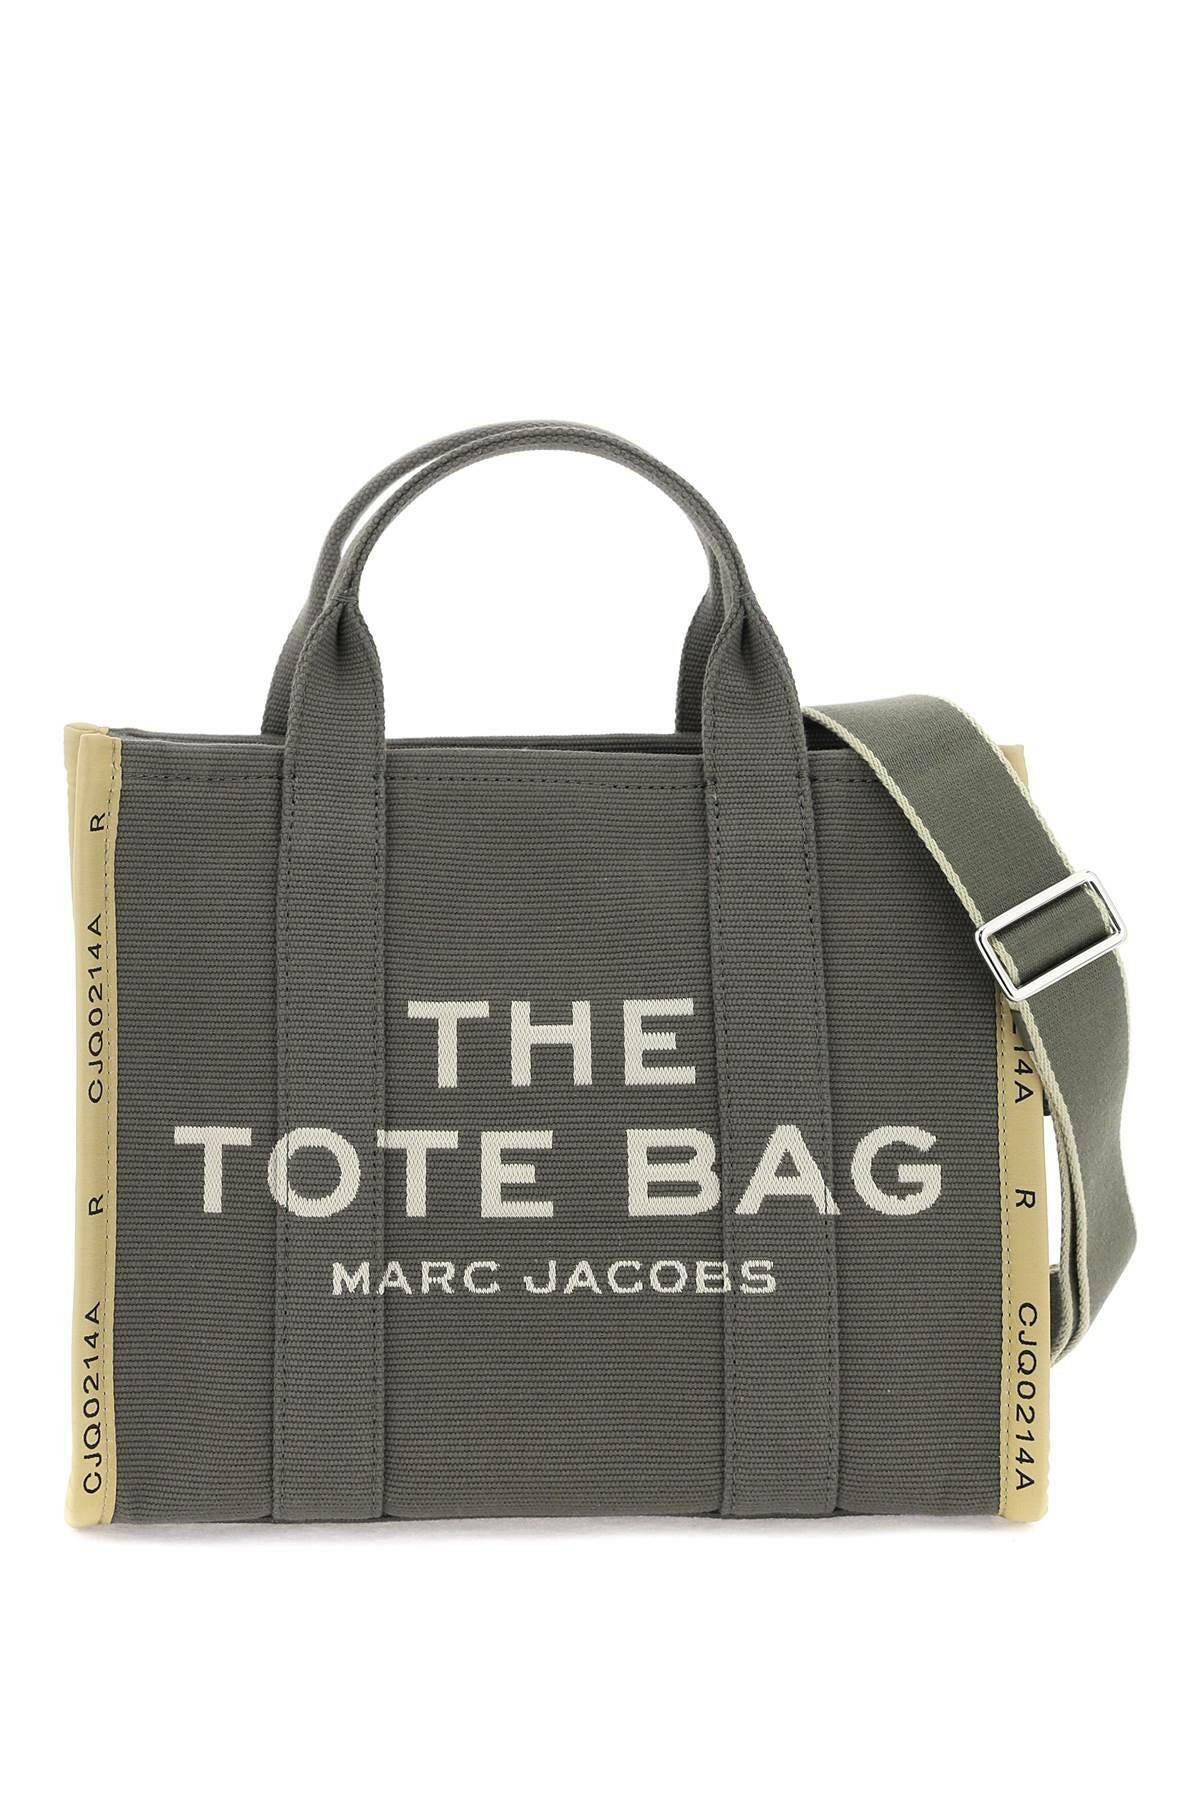 The Jacquard Medium Tote Bag MARC JACOBS JOHN JULIA.